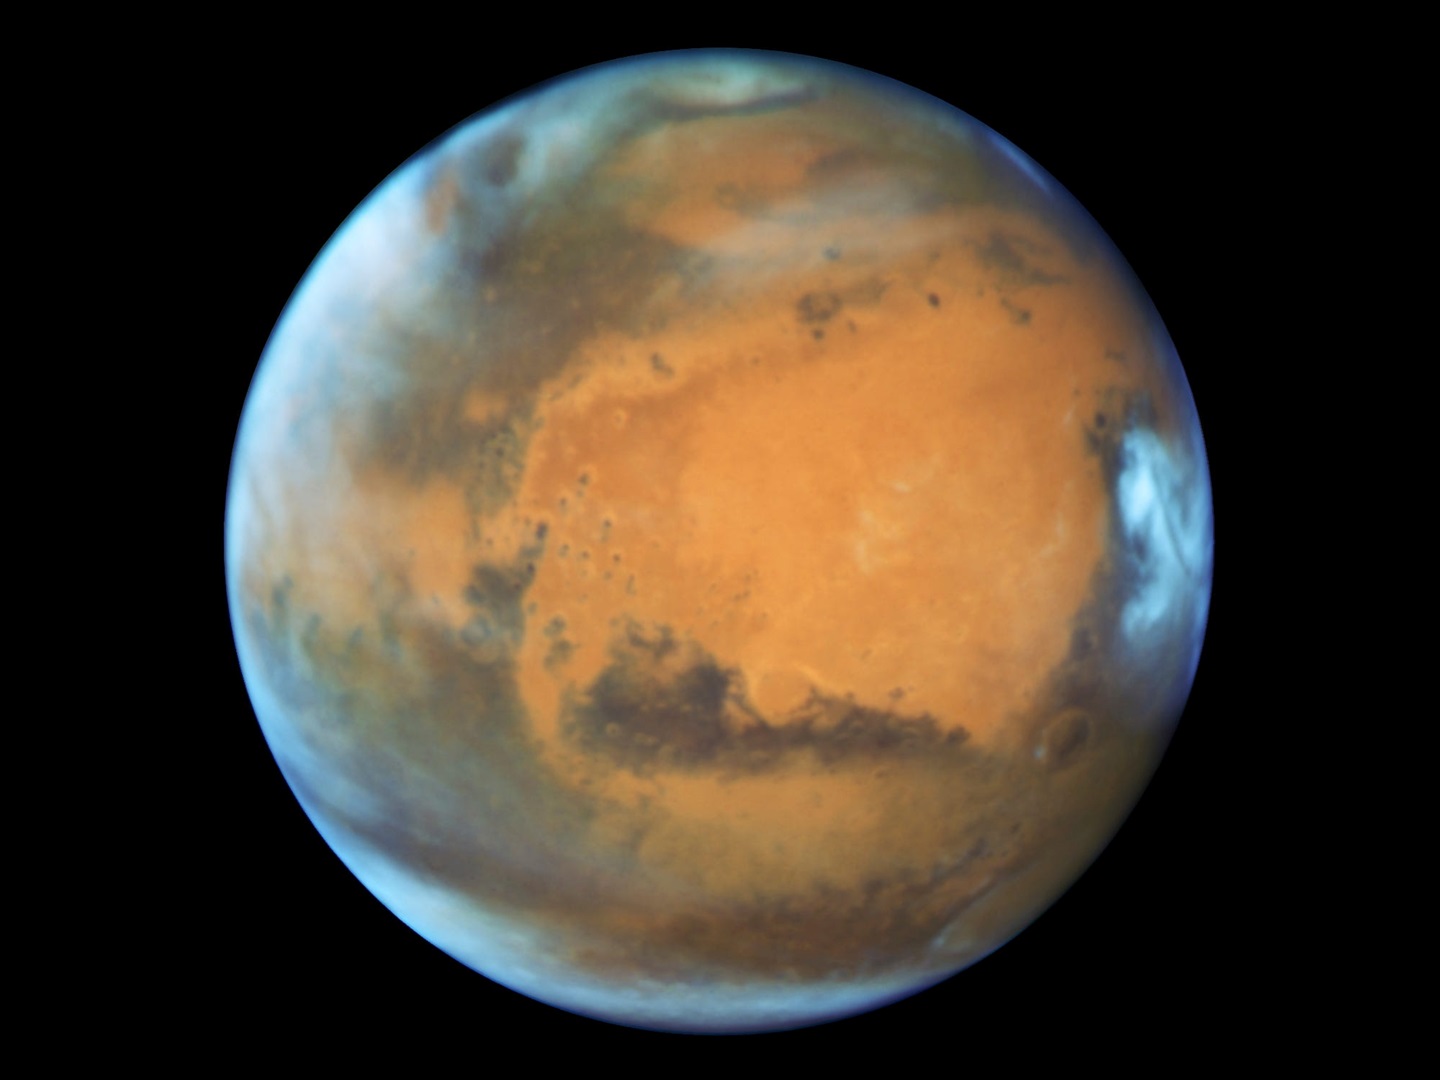 Les images de la NASA montrent qu'un météore s'est écrasé sur Mars, a déclenché un grand tremblement de terre et a soulevé de la glace d'eau surprise